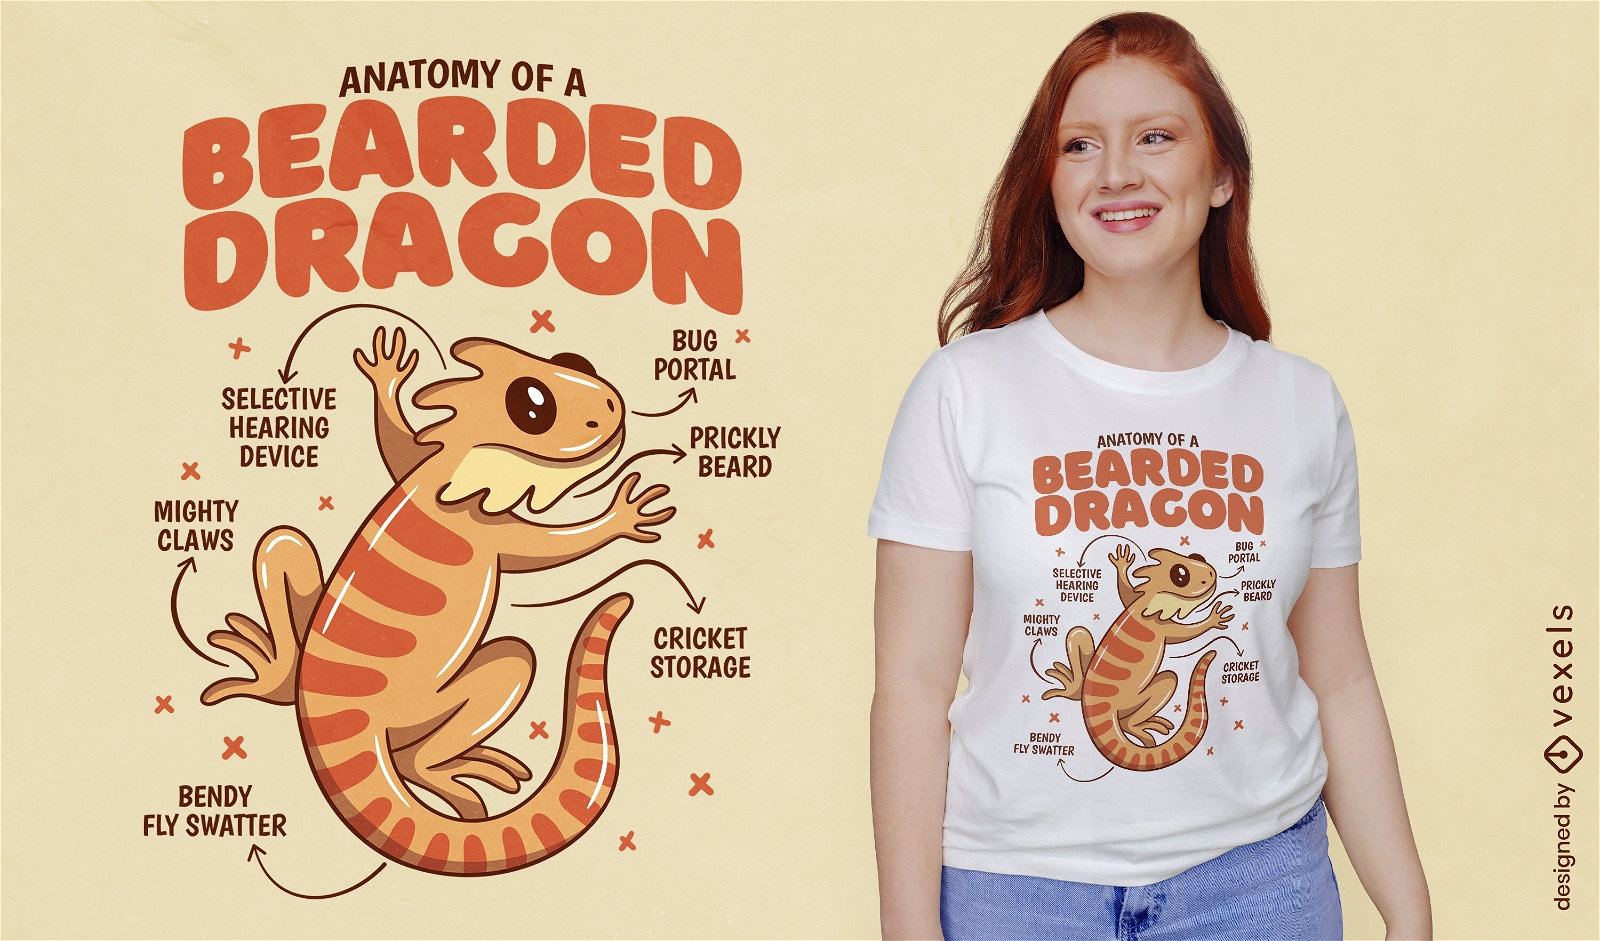 Diseño de camiseta de anatomía de dragón barbudo